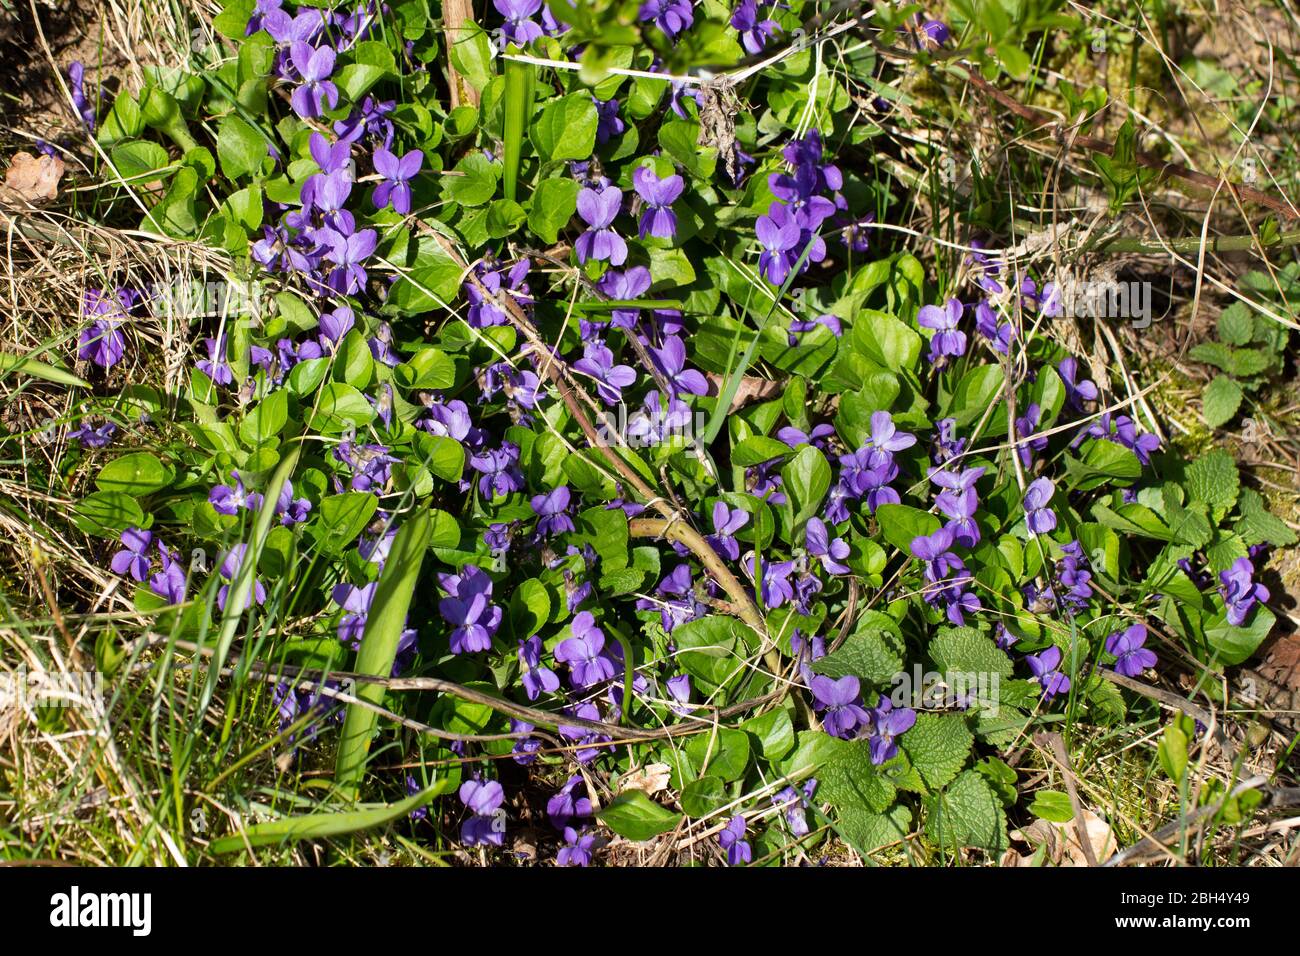 Violettes sauvages de croissance entre brindilles sèches, feuilles et herbe verte, Viola reichenbachiana ou veilchen Banque D'Images